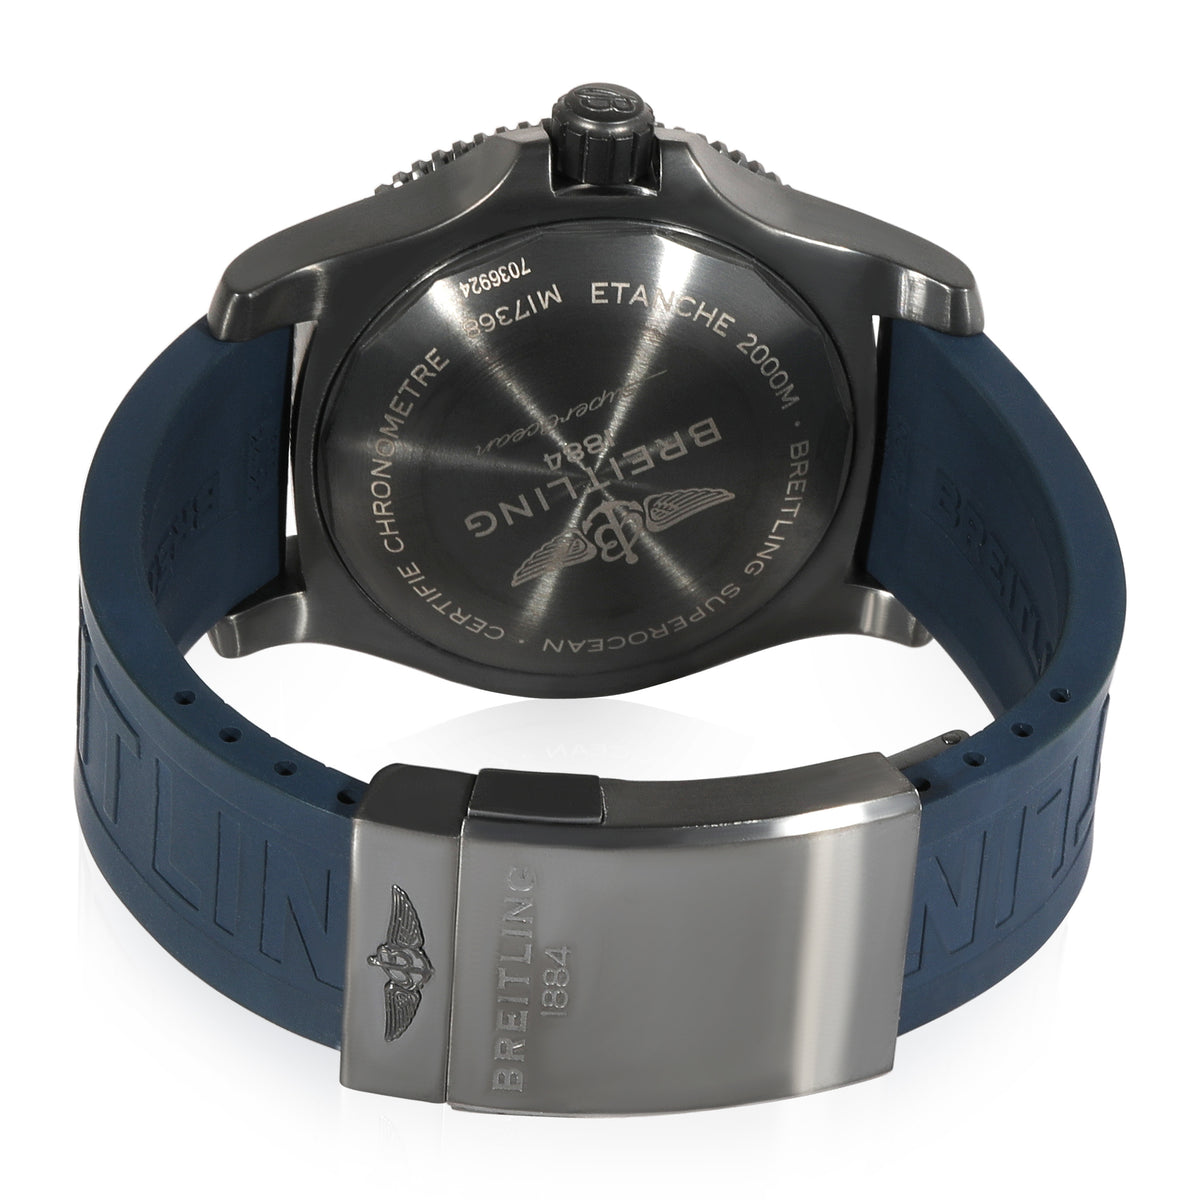 Breitling Superocean II M17368D71C1S2 Men's Watch in  Black Steel